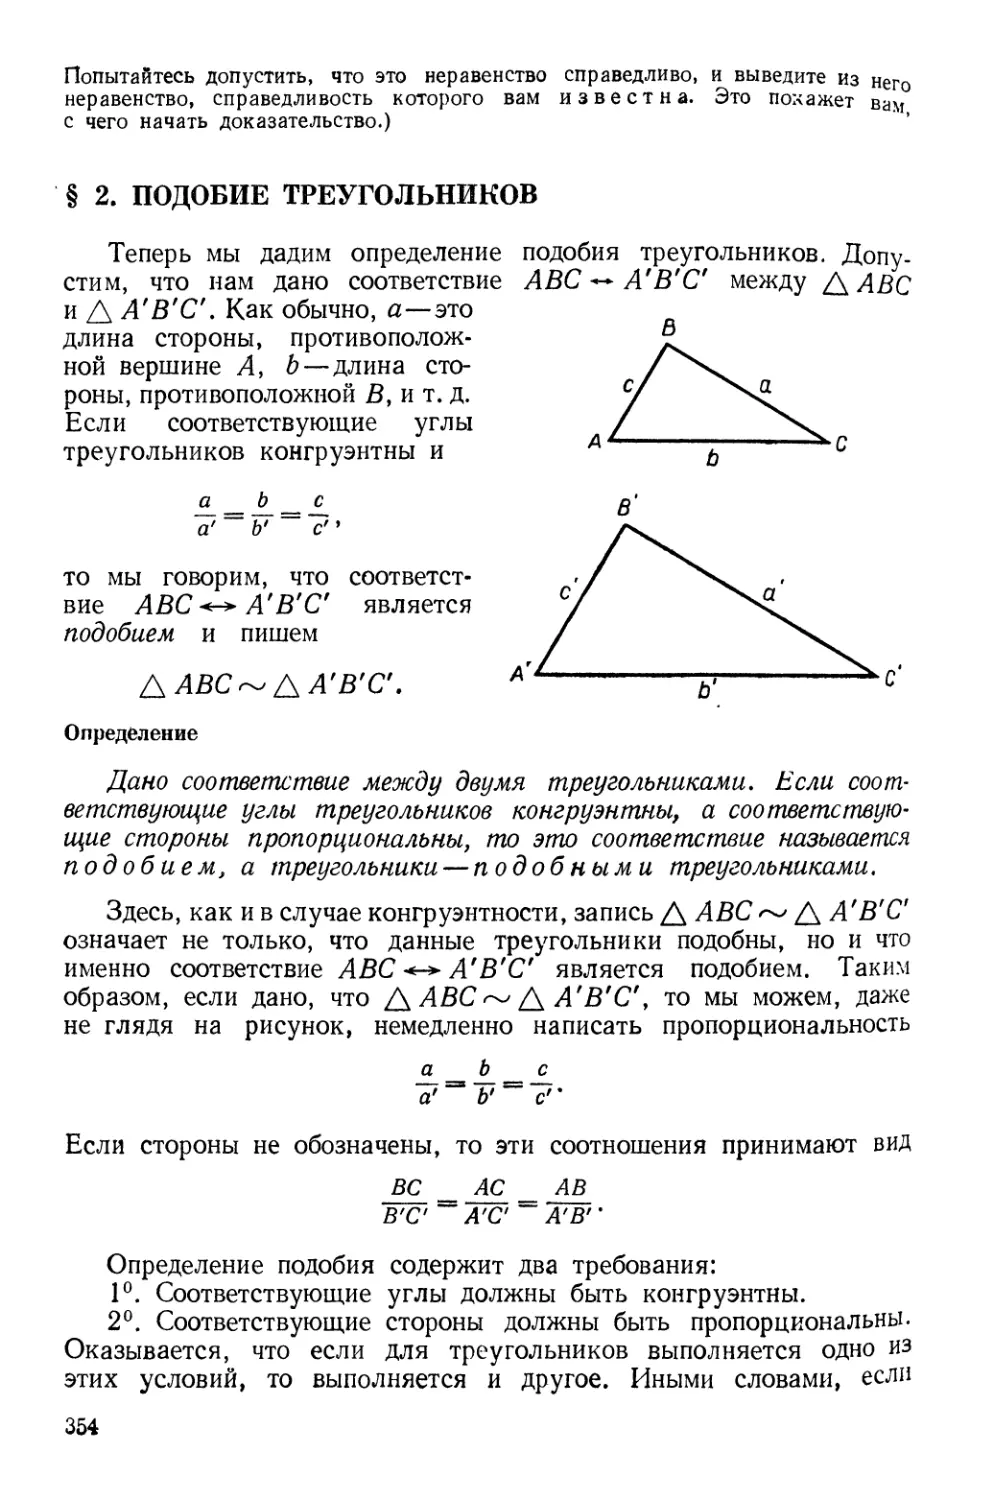 § 2. Подобие треугольников